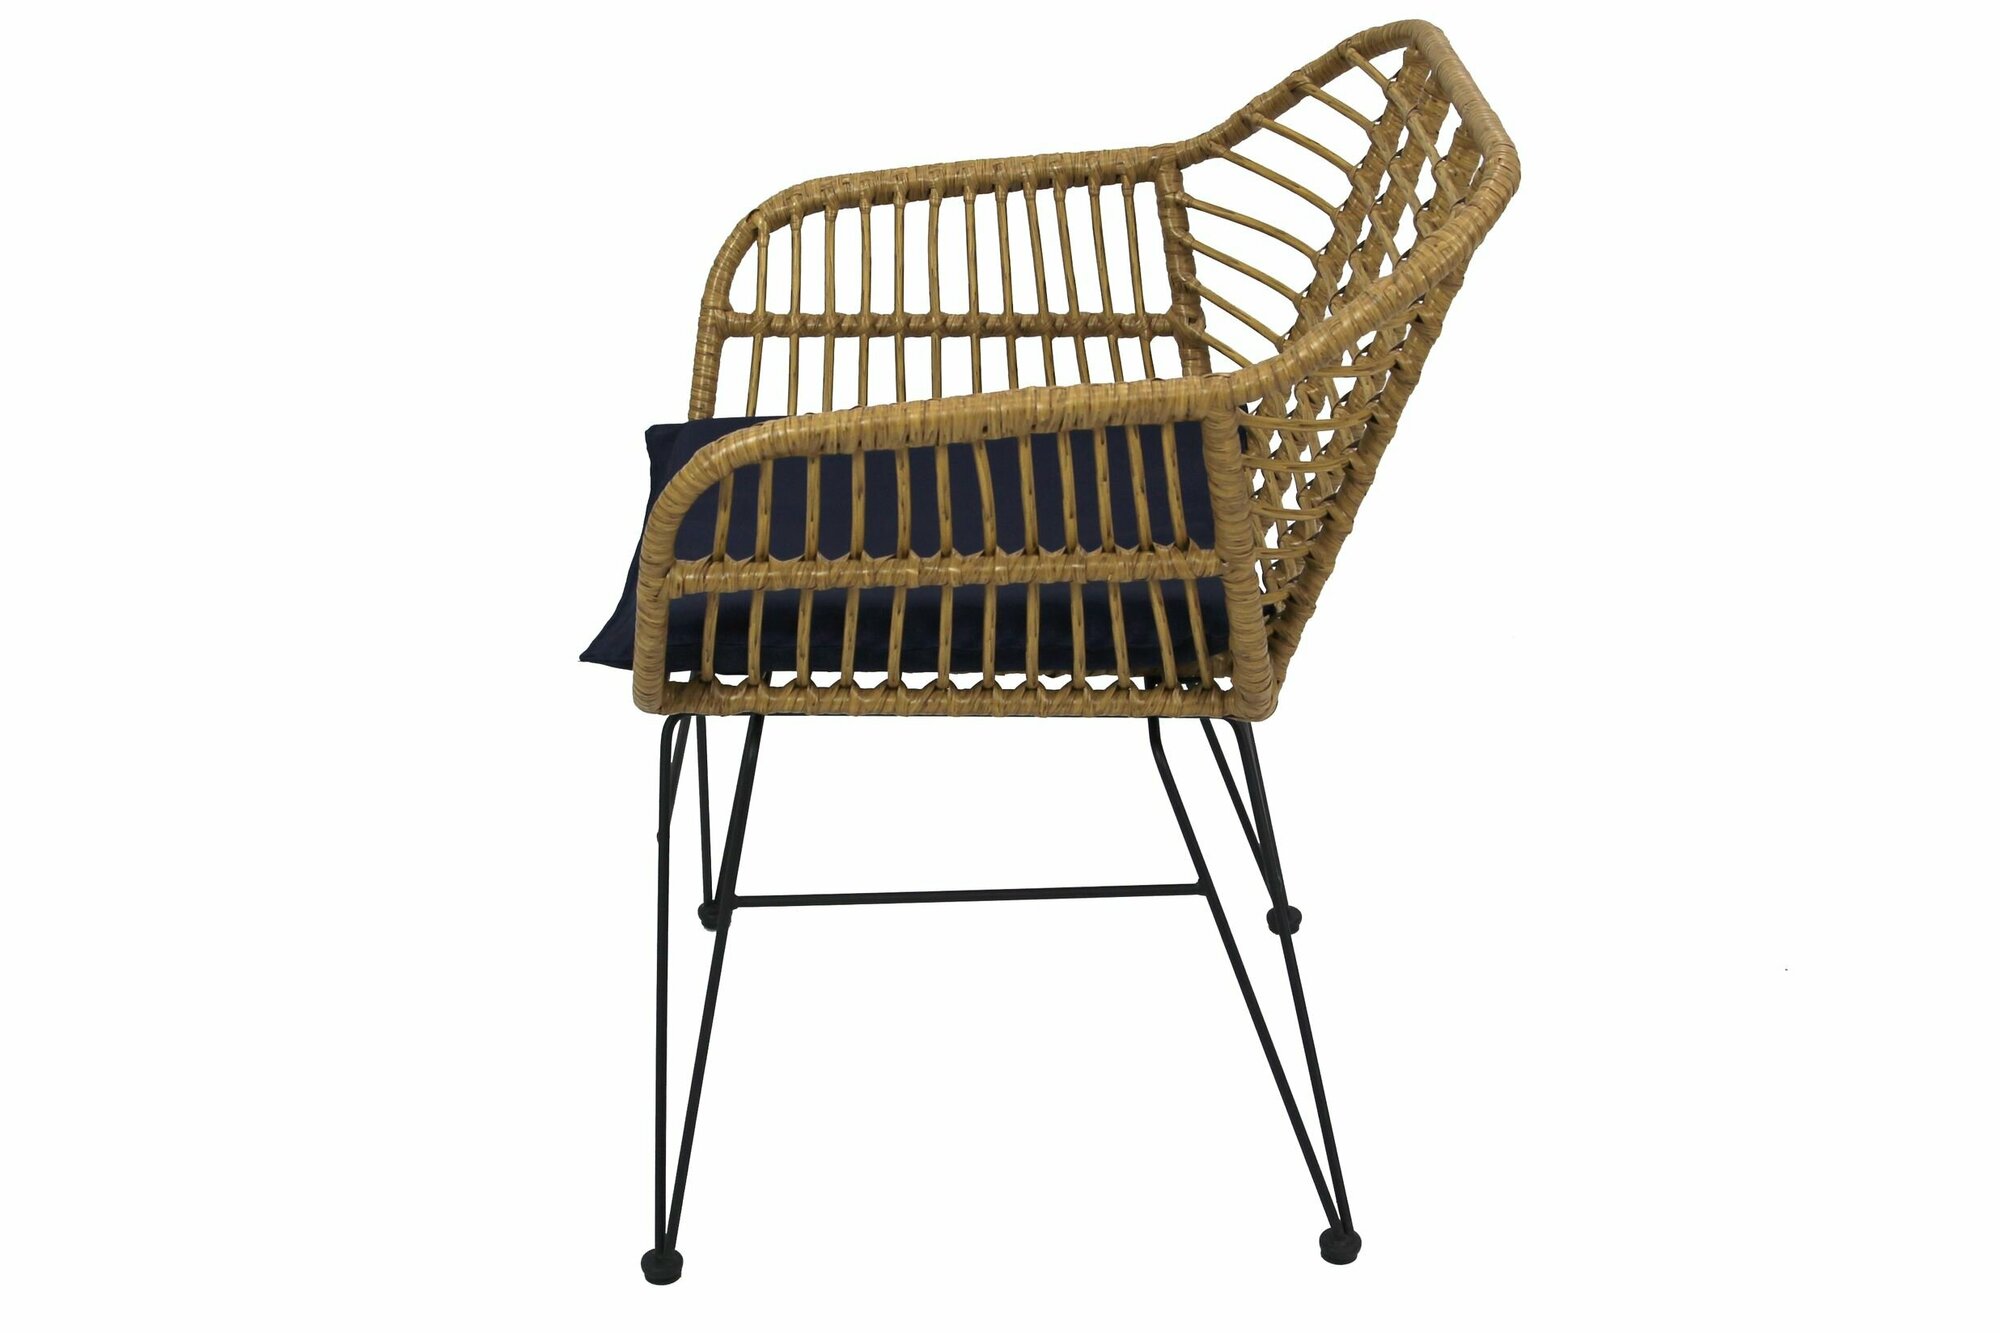 Набор садовой мебели для обеда Адриан GS008 искусственный ротанг бежевый: стол, кресла Без бренда - фото №12